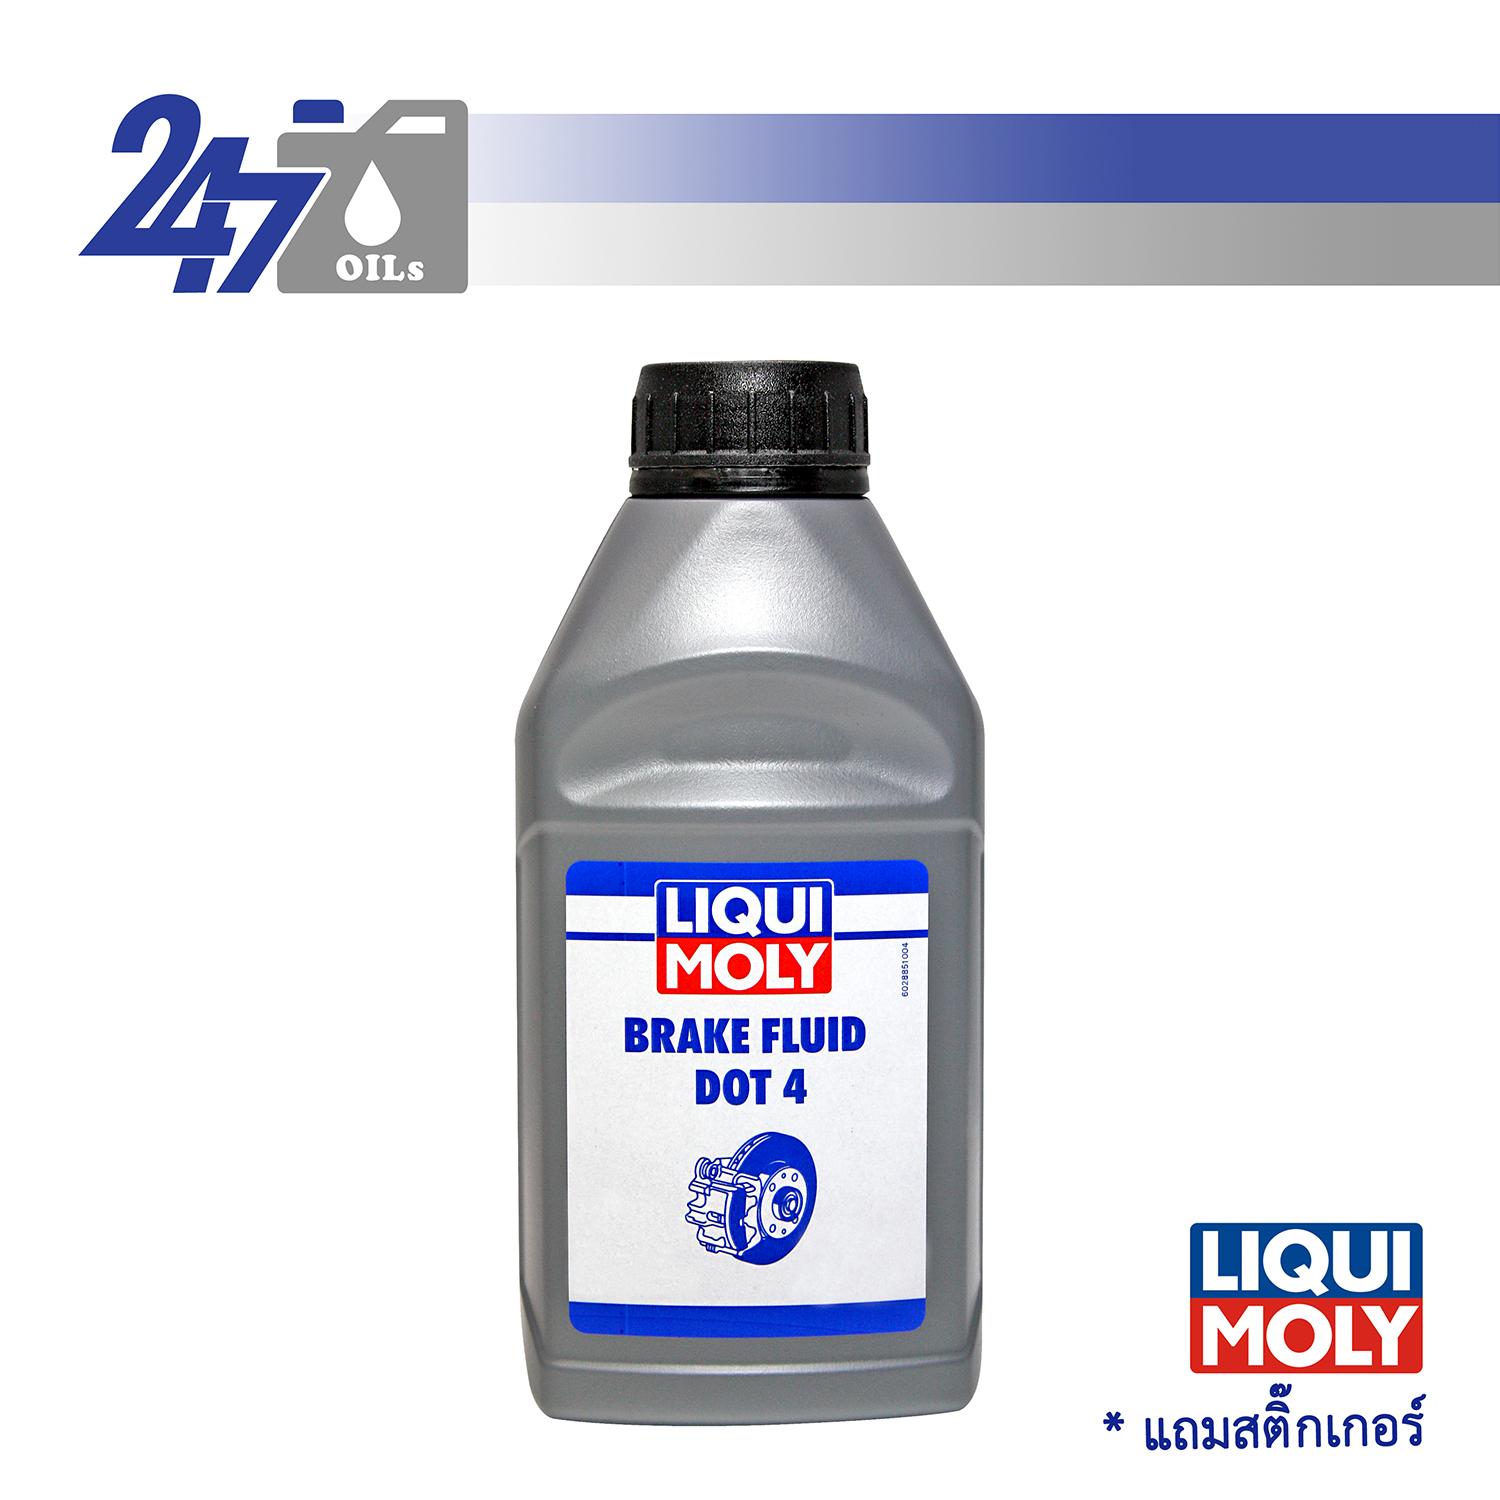 LIQUI MOLY น้ำมันเบรค Brake Fluid DOT 4 ขนาด 500 ml.